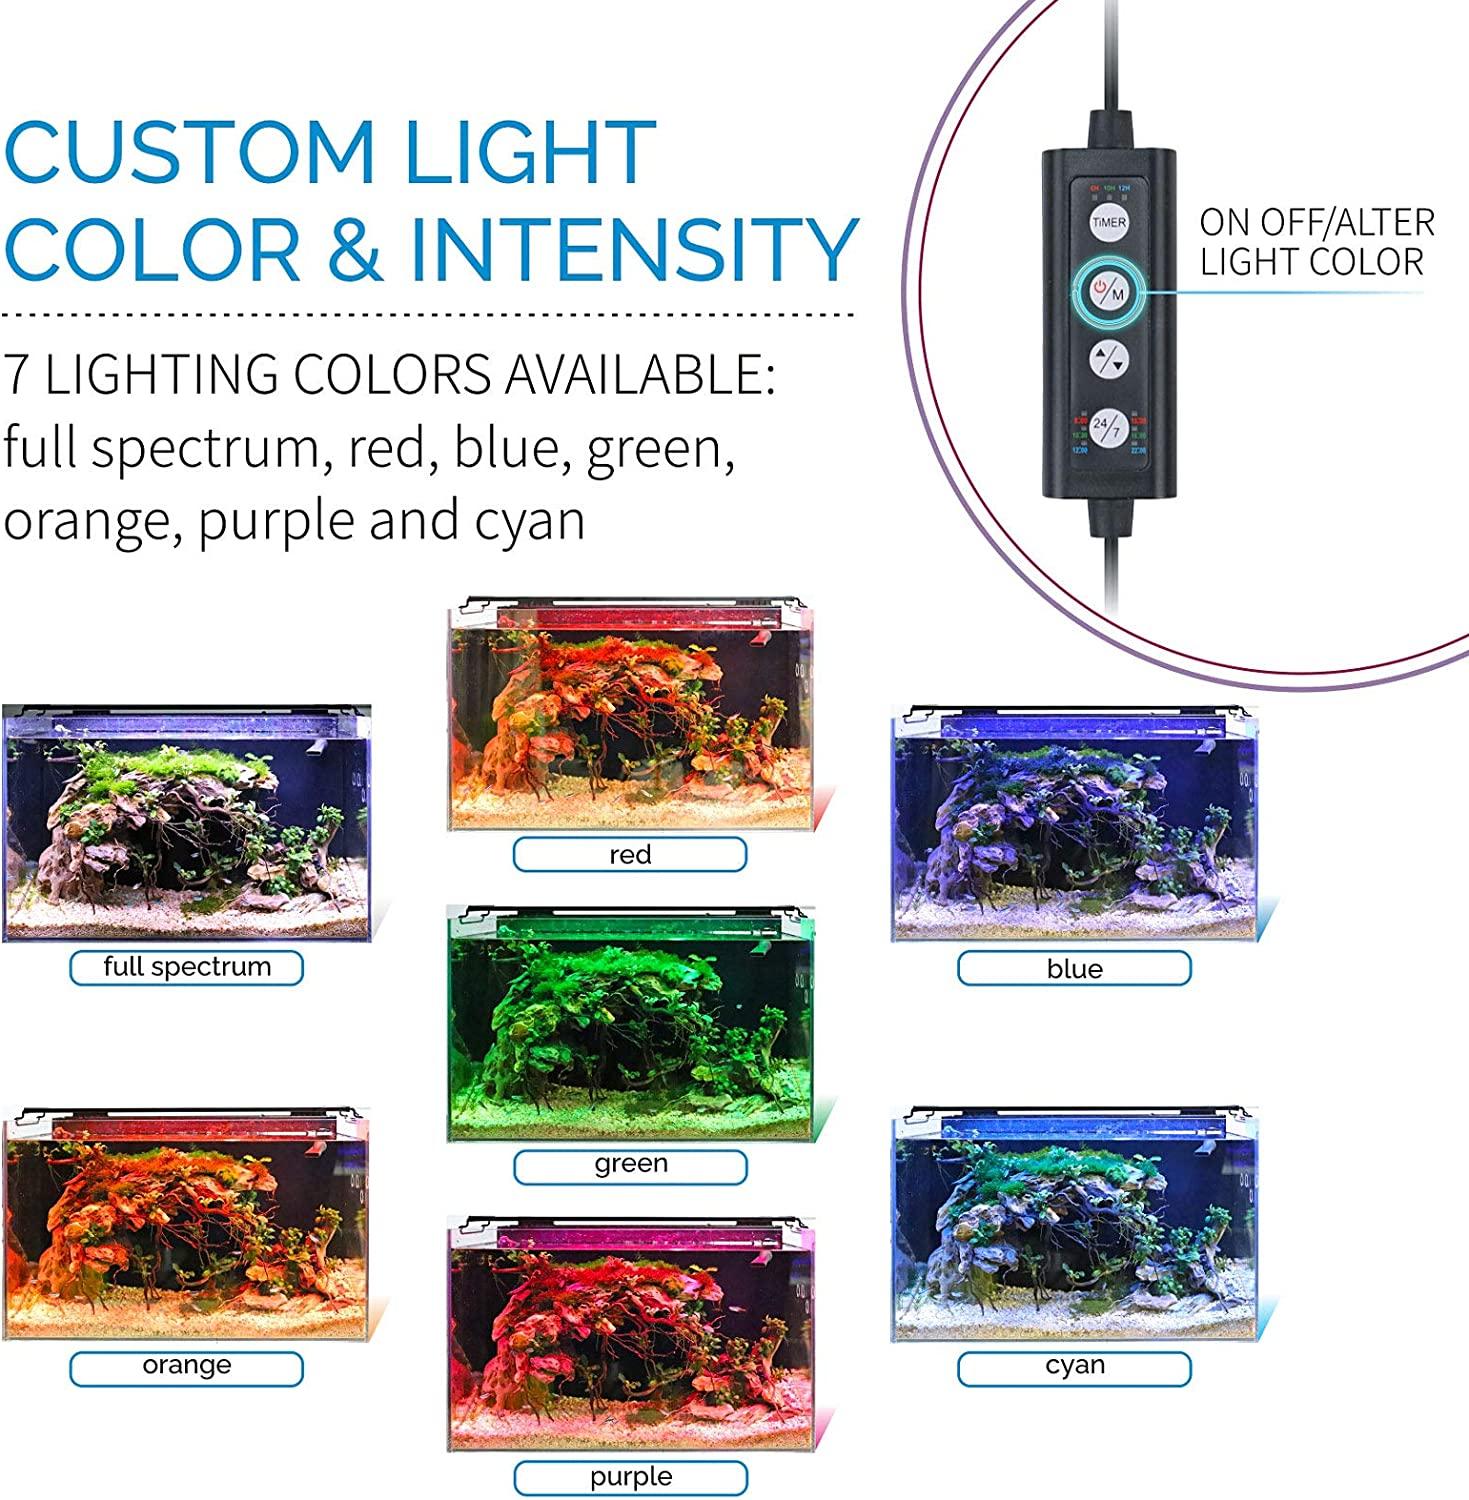 180-LEDs White & Blue LED Light Full Spectrum Aquarium Fish Tank